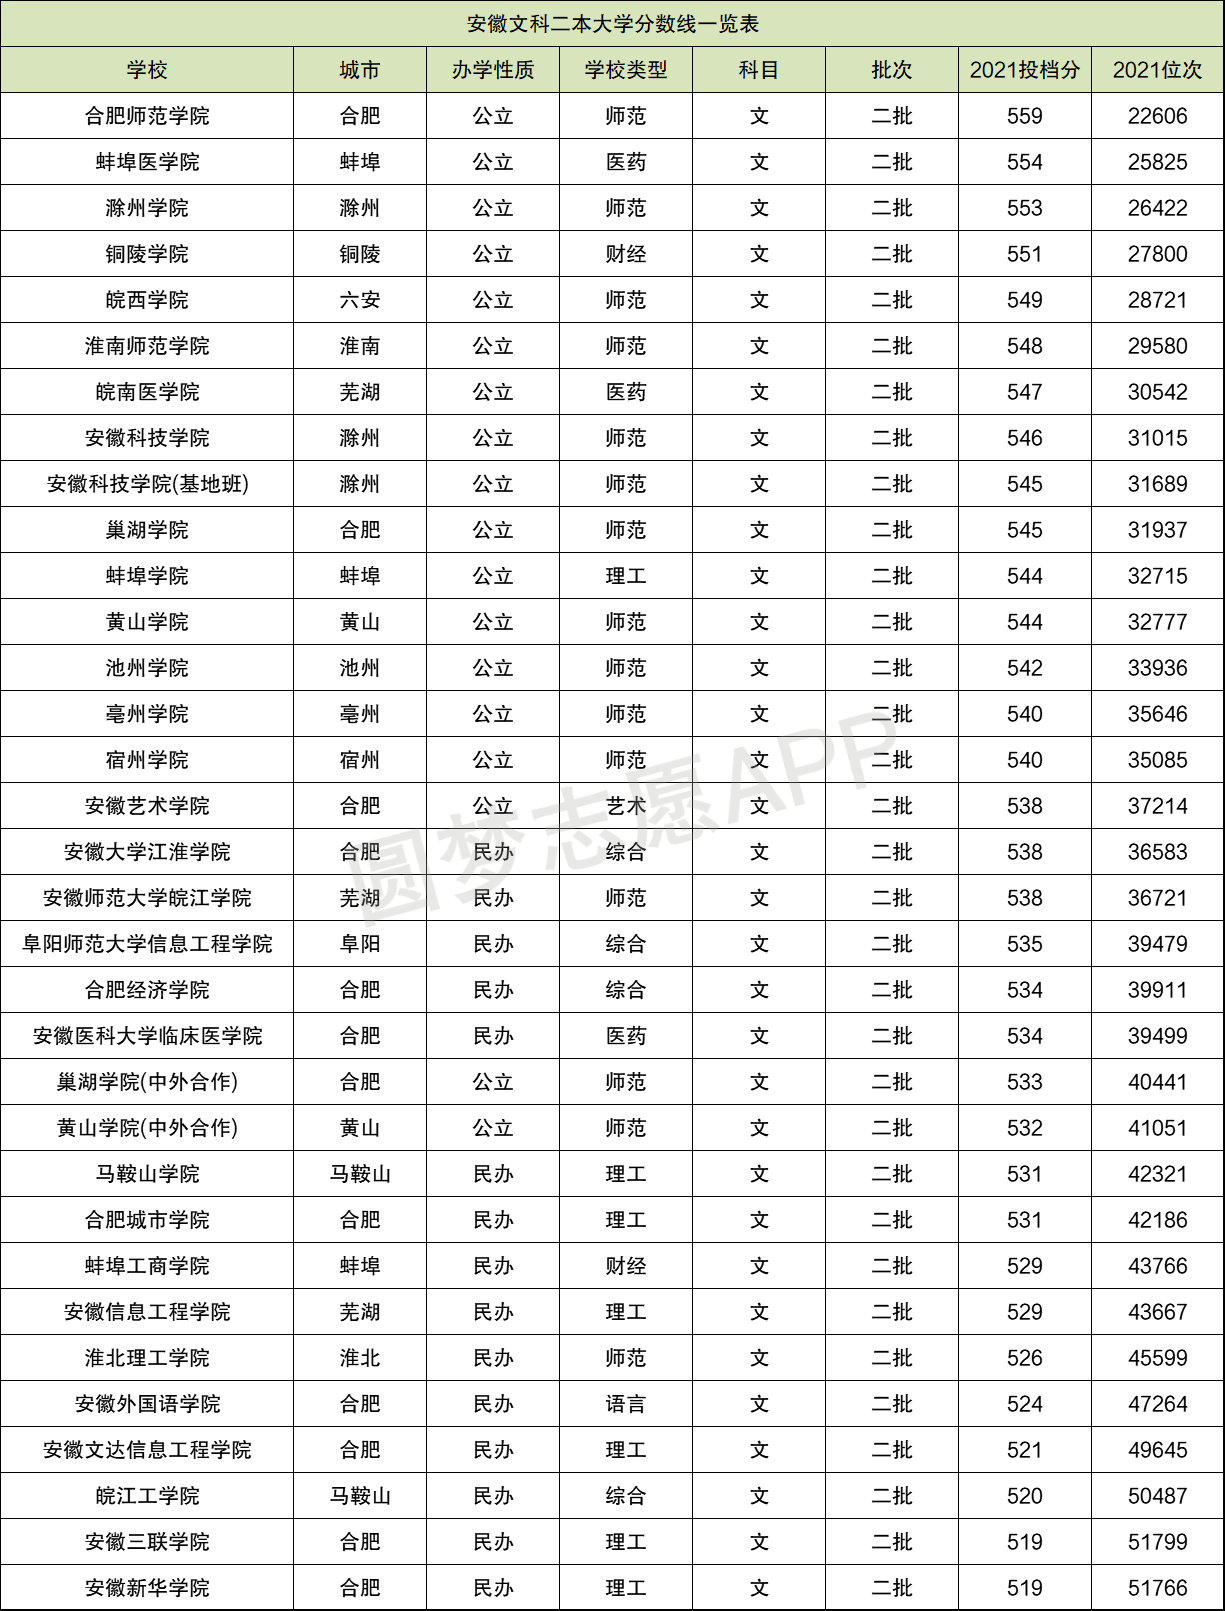 2022年广东高职高考各院校最低录取分数线 - 广东高职高考网